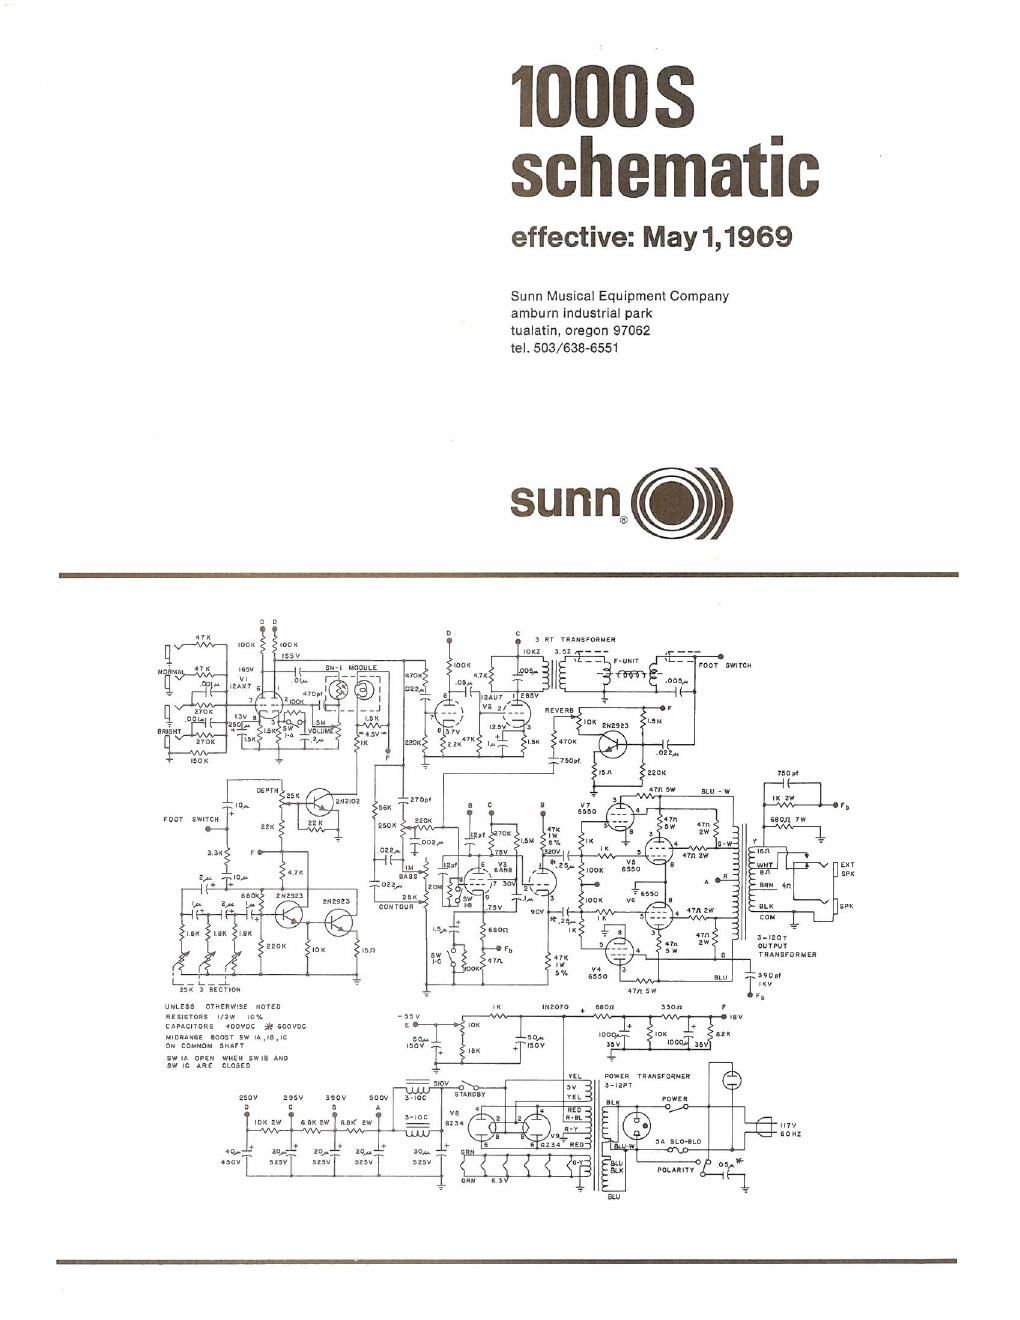 sunn 1000s schematic